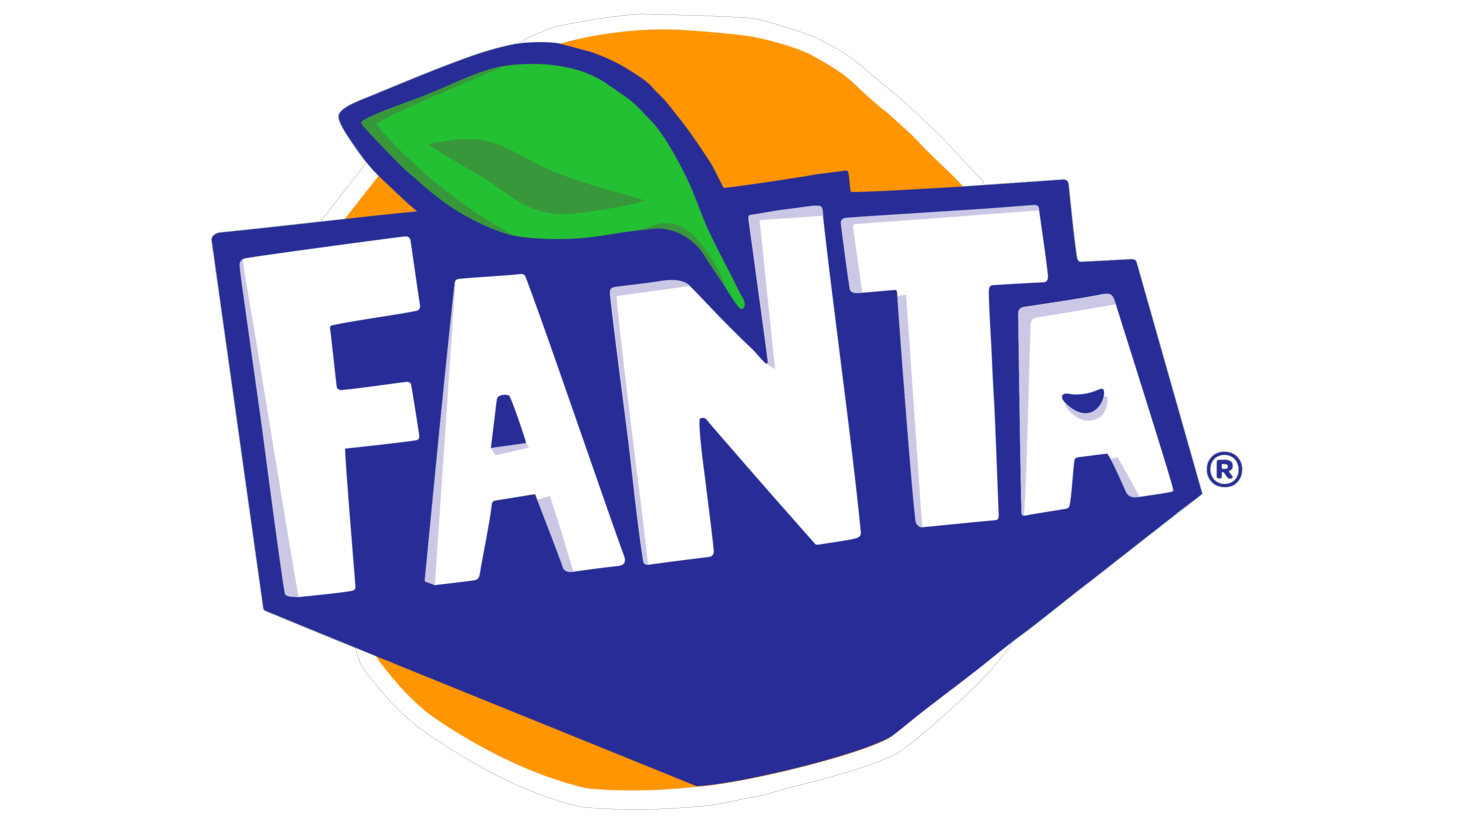 Fanta sign 2010 2016